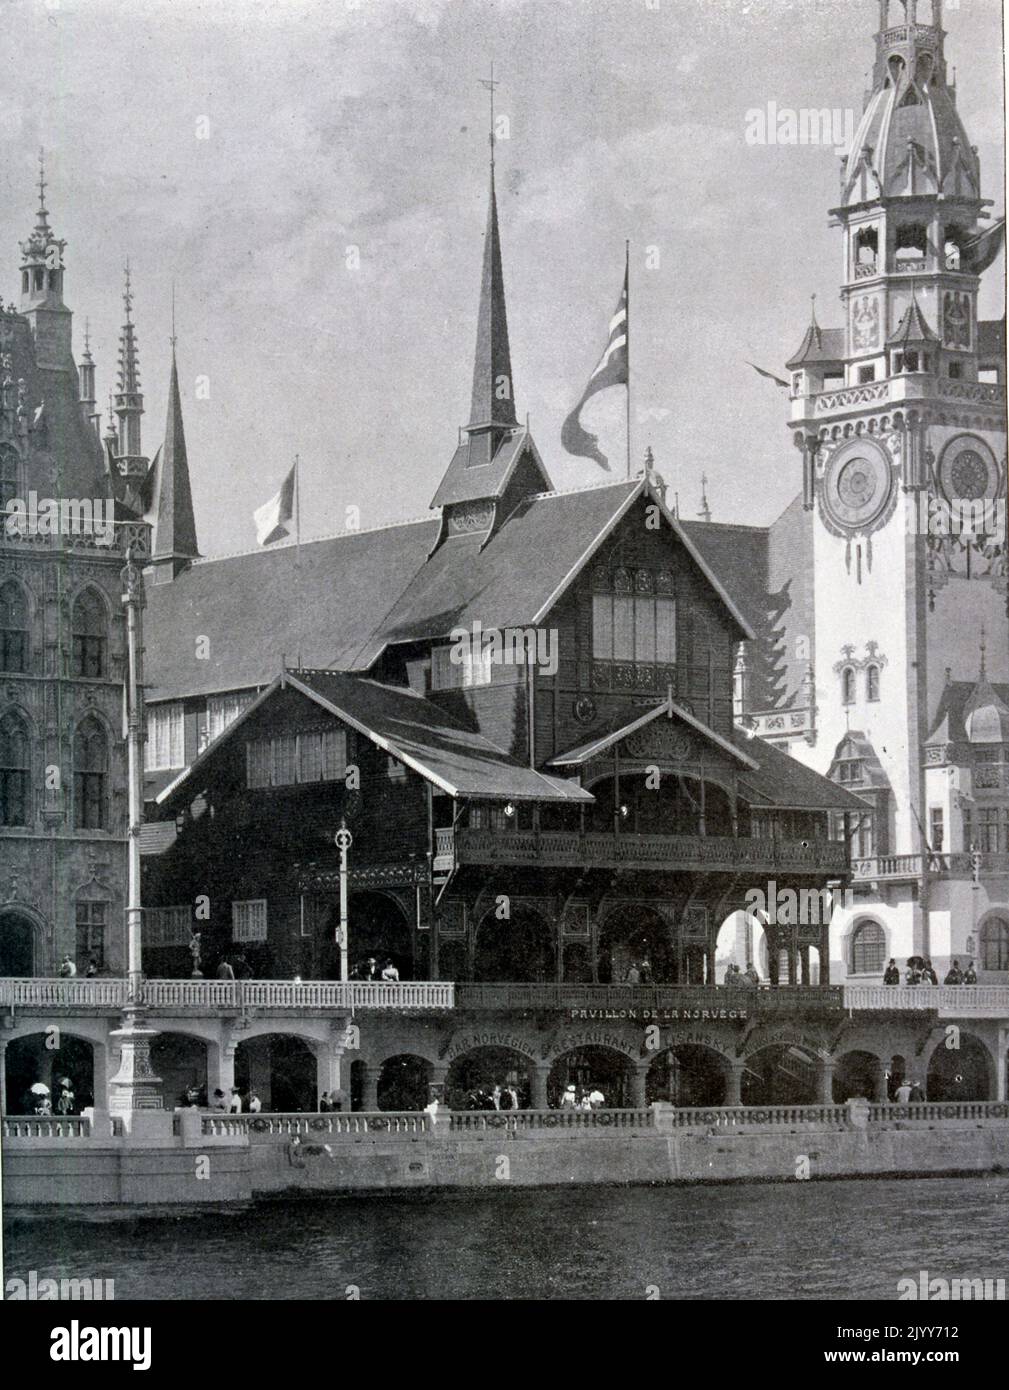 Exposition universelle (Foire mondiale) Paris, 1900; Photographie noir et blanc du Pavillon norvégien. Banque D'Images